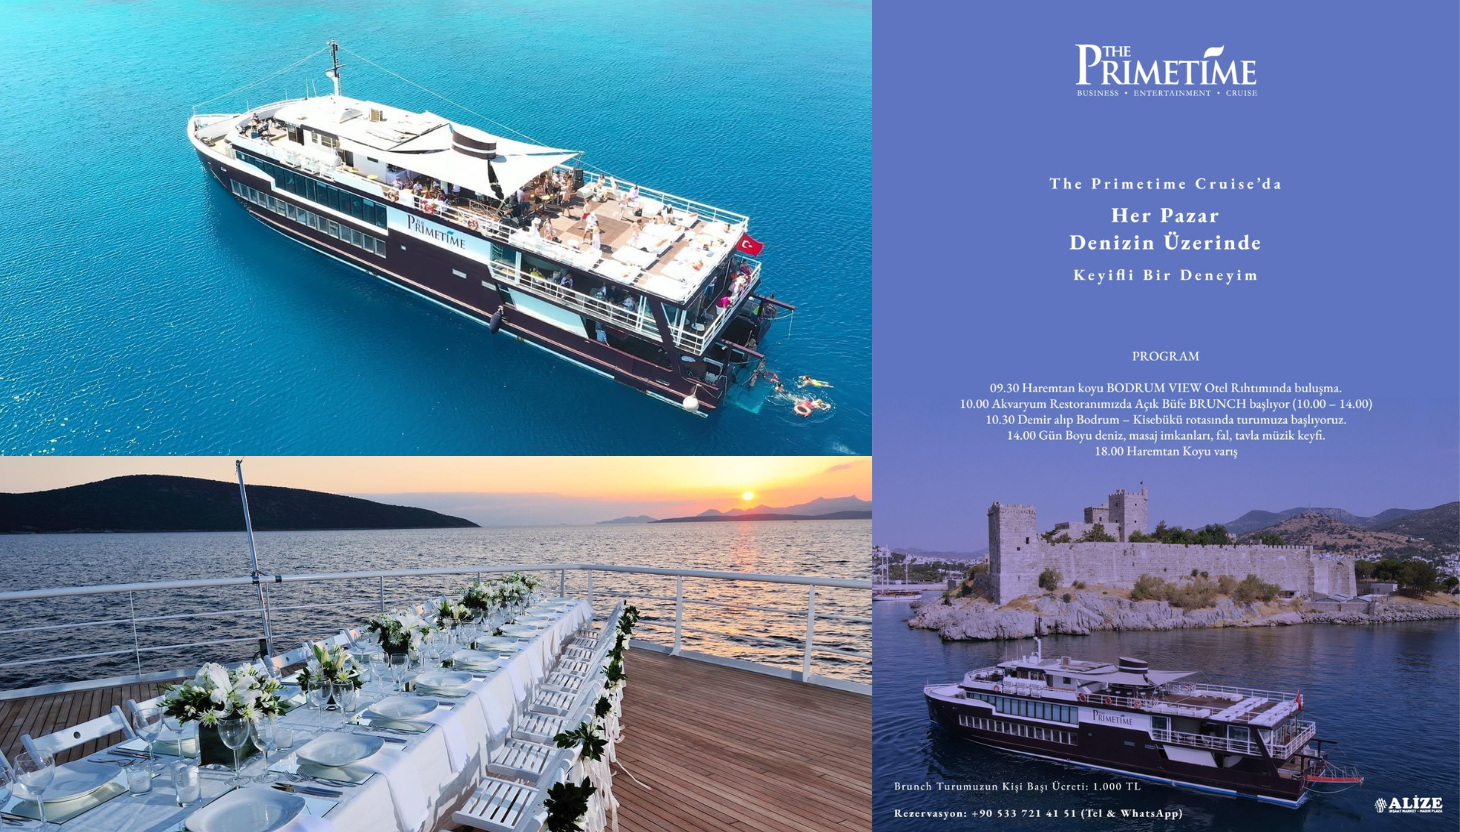 The Primetime Cruise ile denizin üzerinde keyifli bir deneyime hazır mısınız?